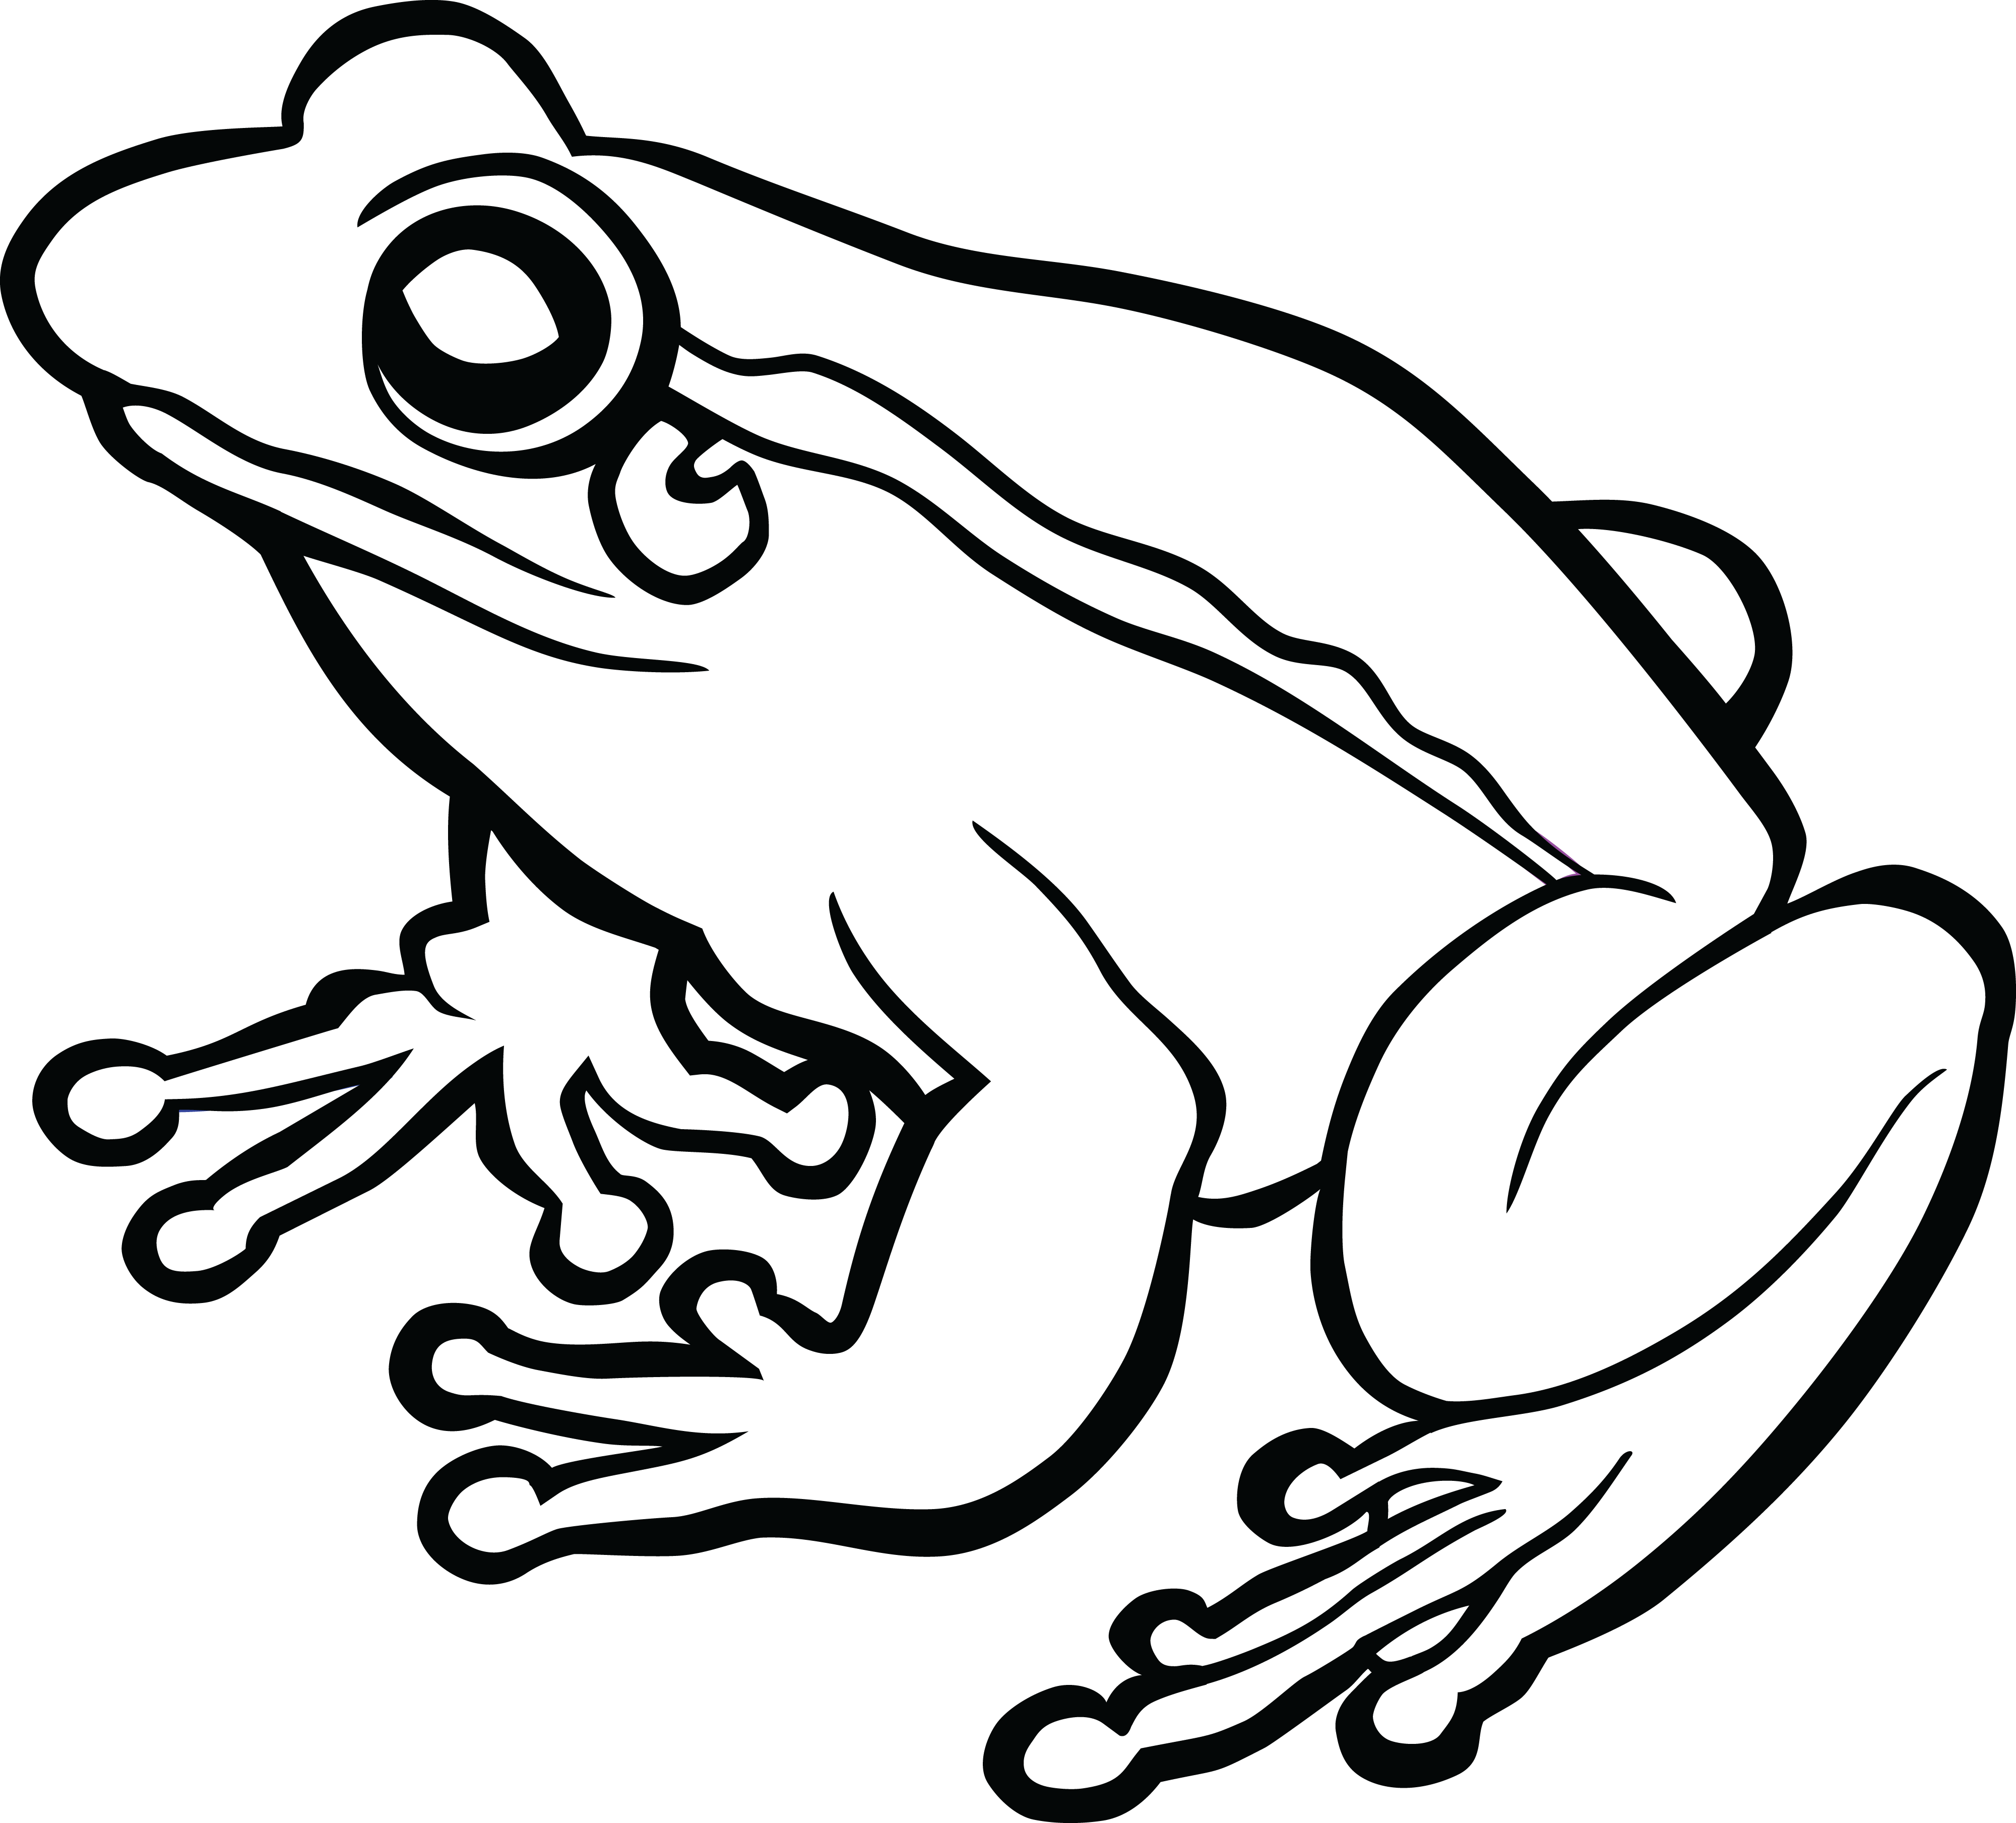 frog-on-a-log-clip-art-black-